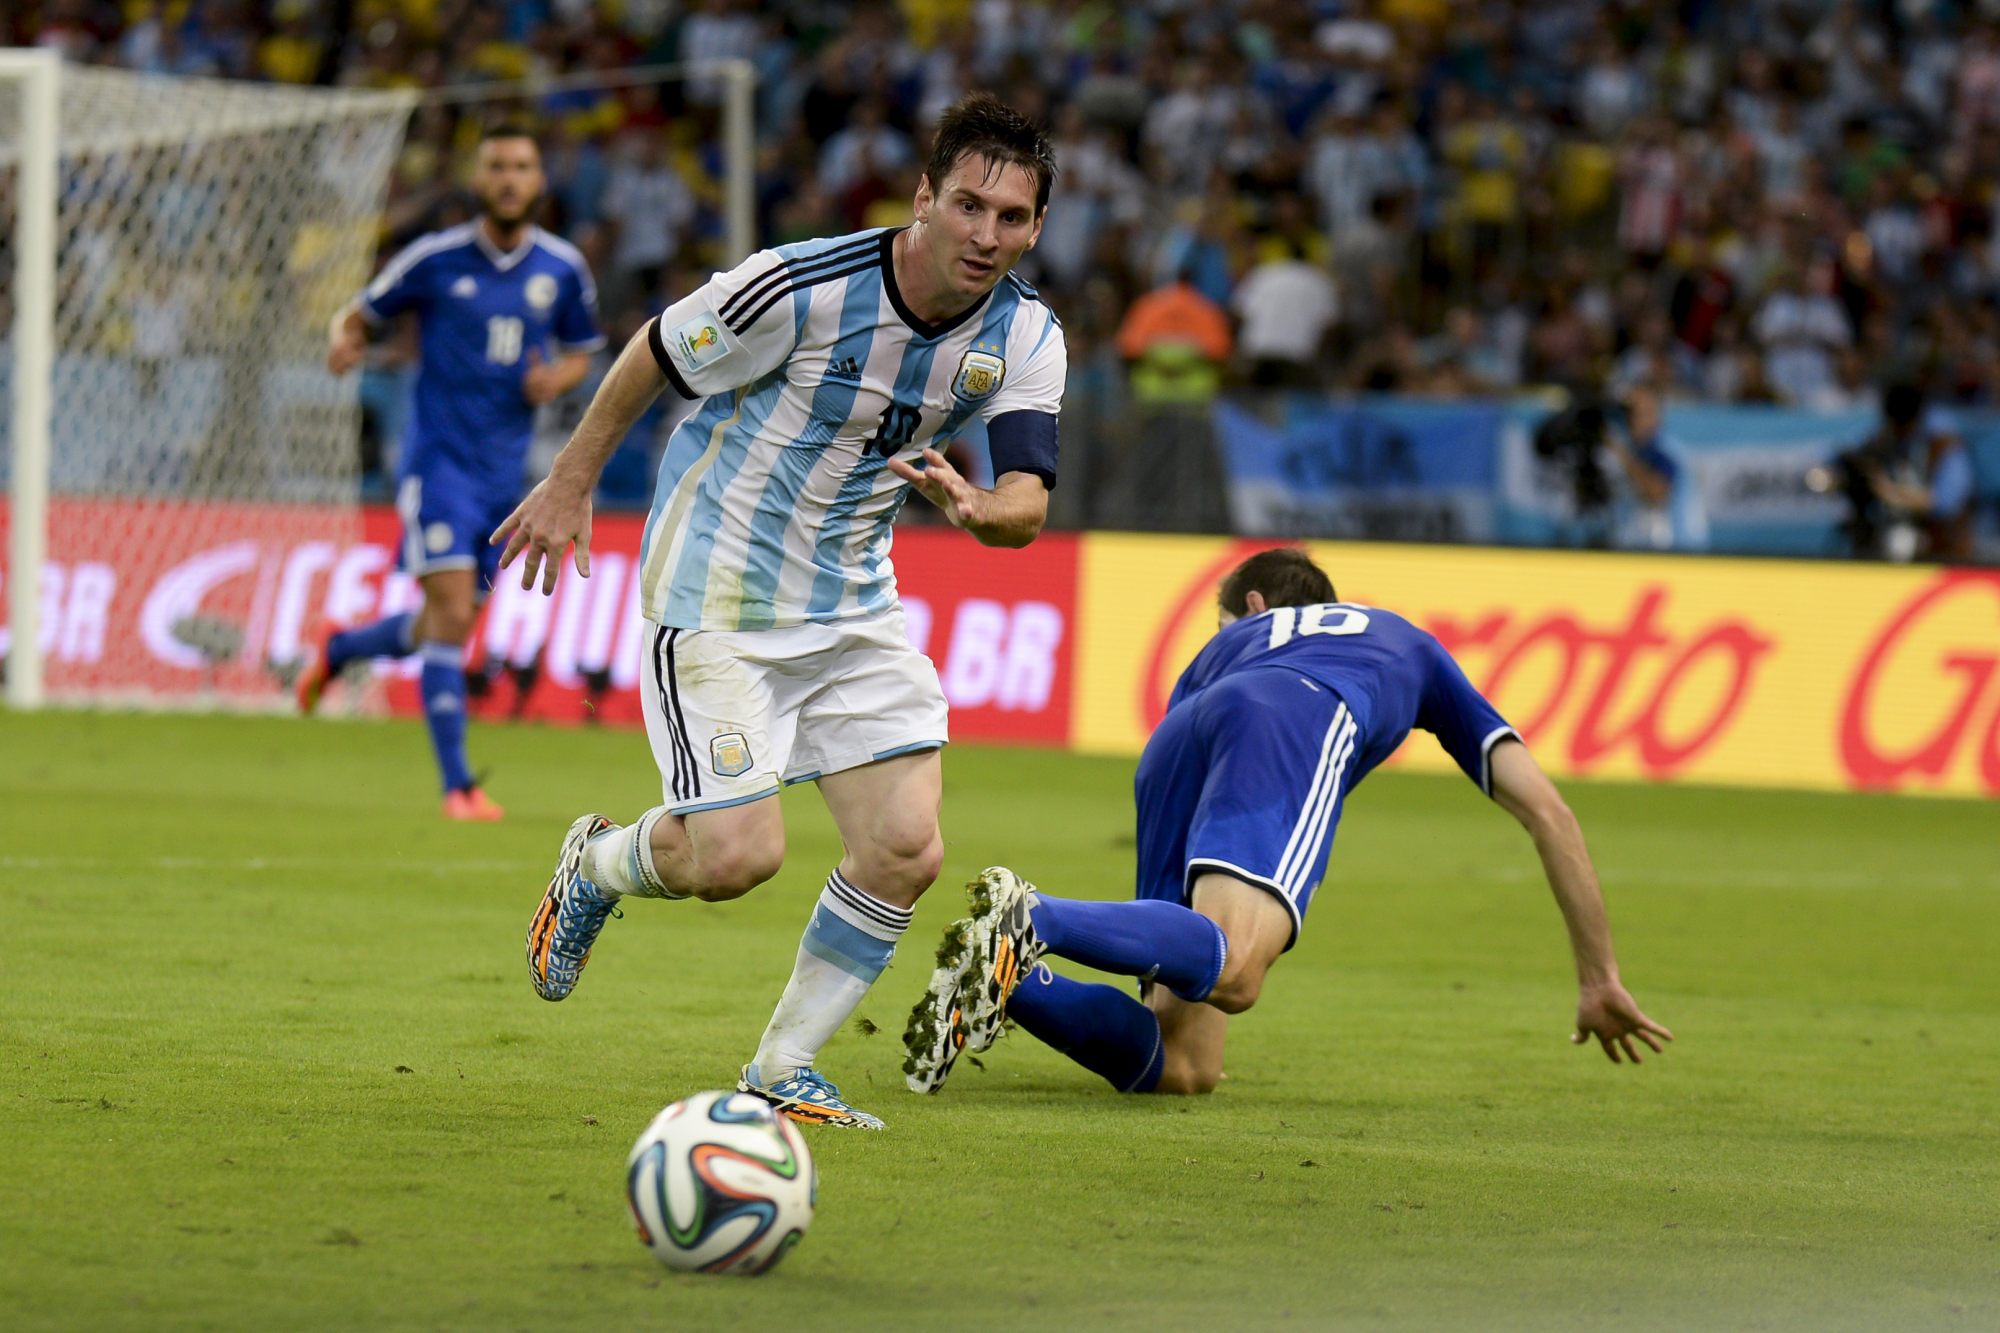 Jangan Tinggalkan Kami Lionel Messi TirtoID